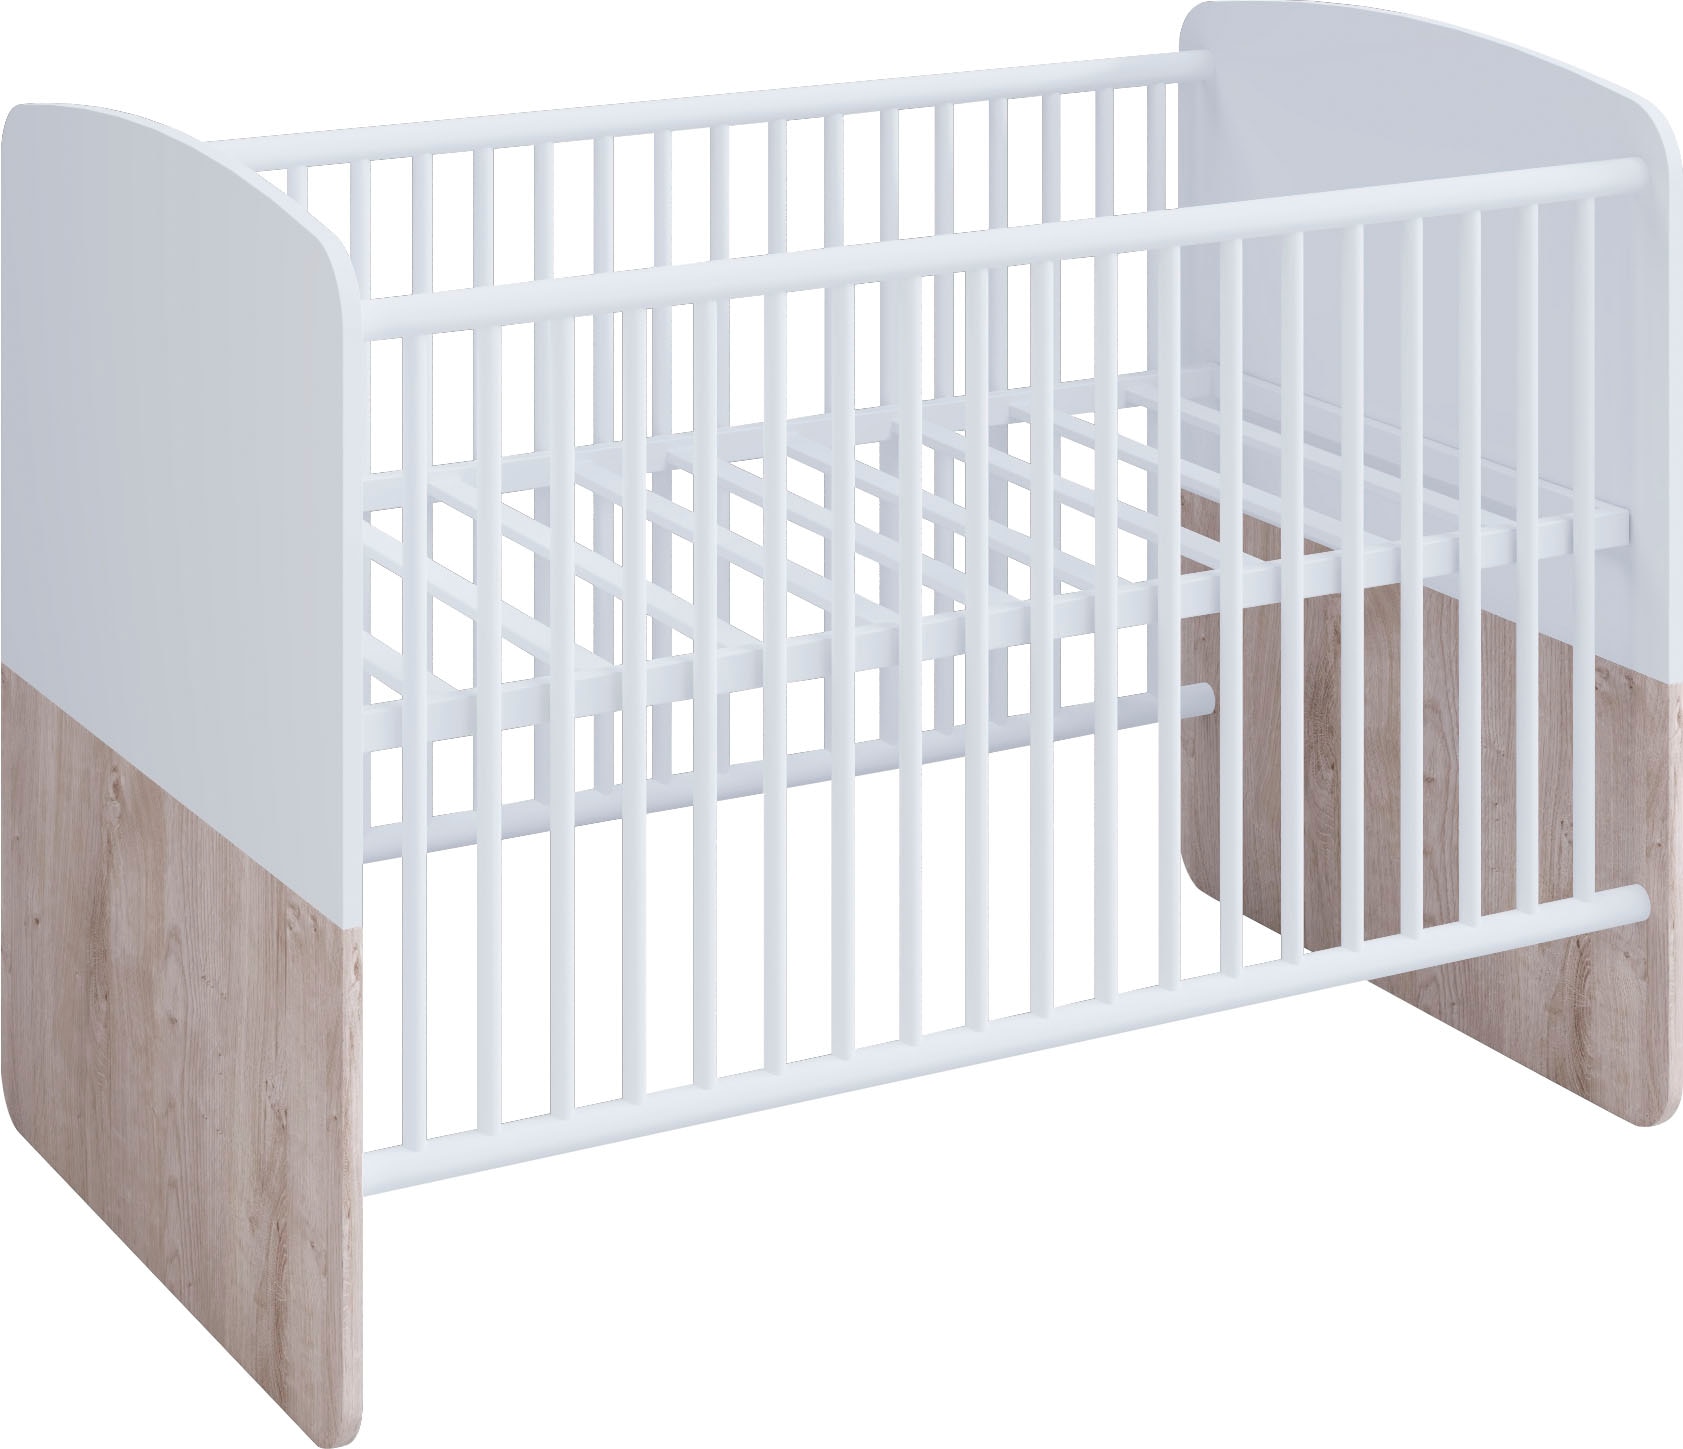 Babybett, Babybett mit Liegefläche 70 x 140 cm, höhenverstellbarer Lattenrost, Weiß/Eiche Desmond Lattenrost